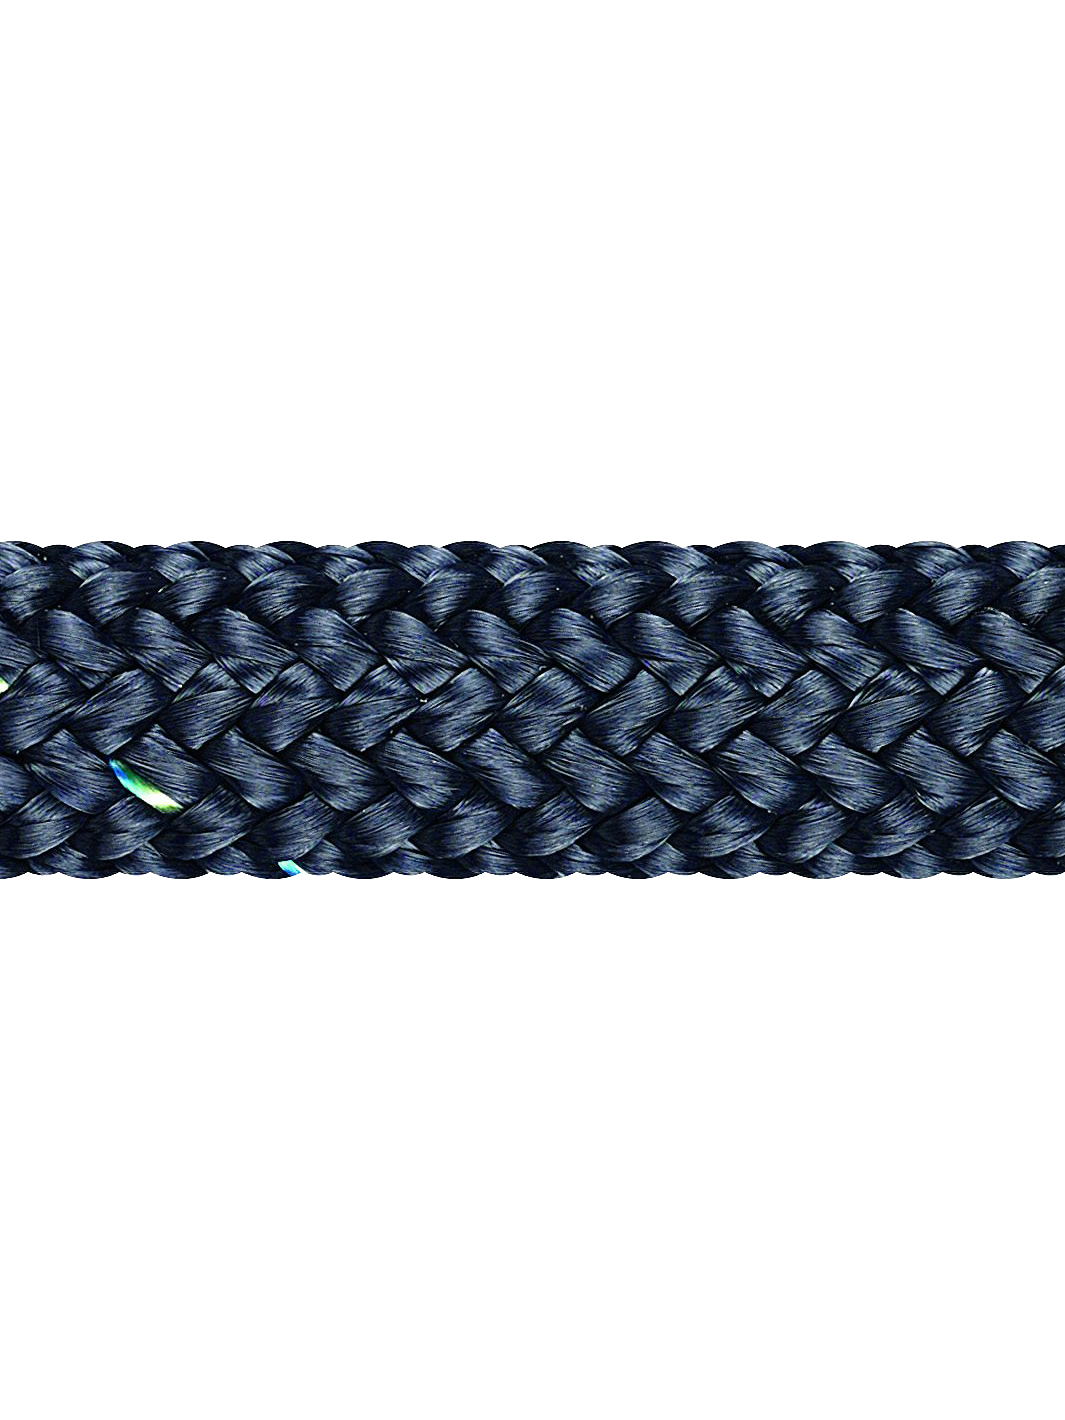 Σχοινί Racer (Dyneema sk78) Liros-ropes - compomare marine chandlers